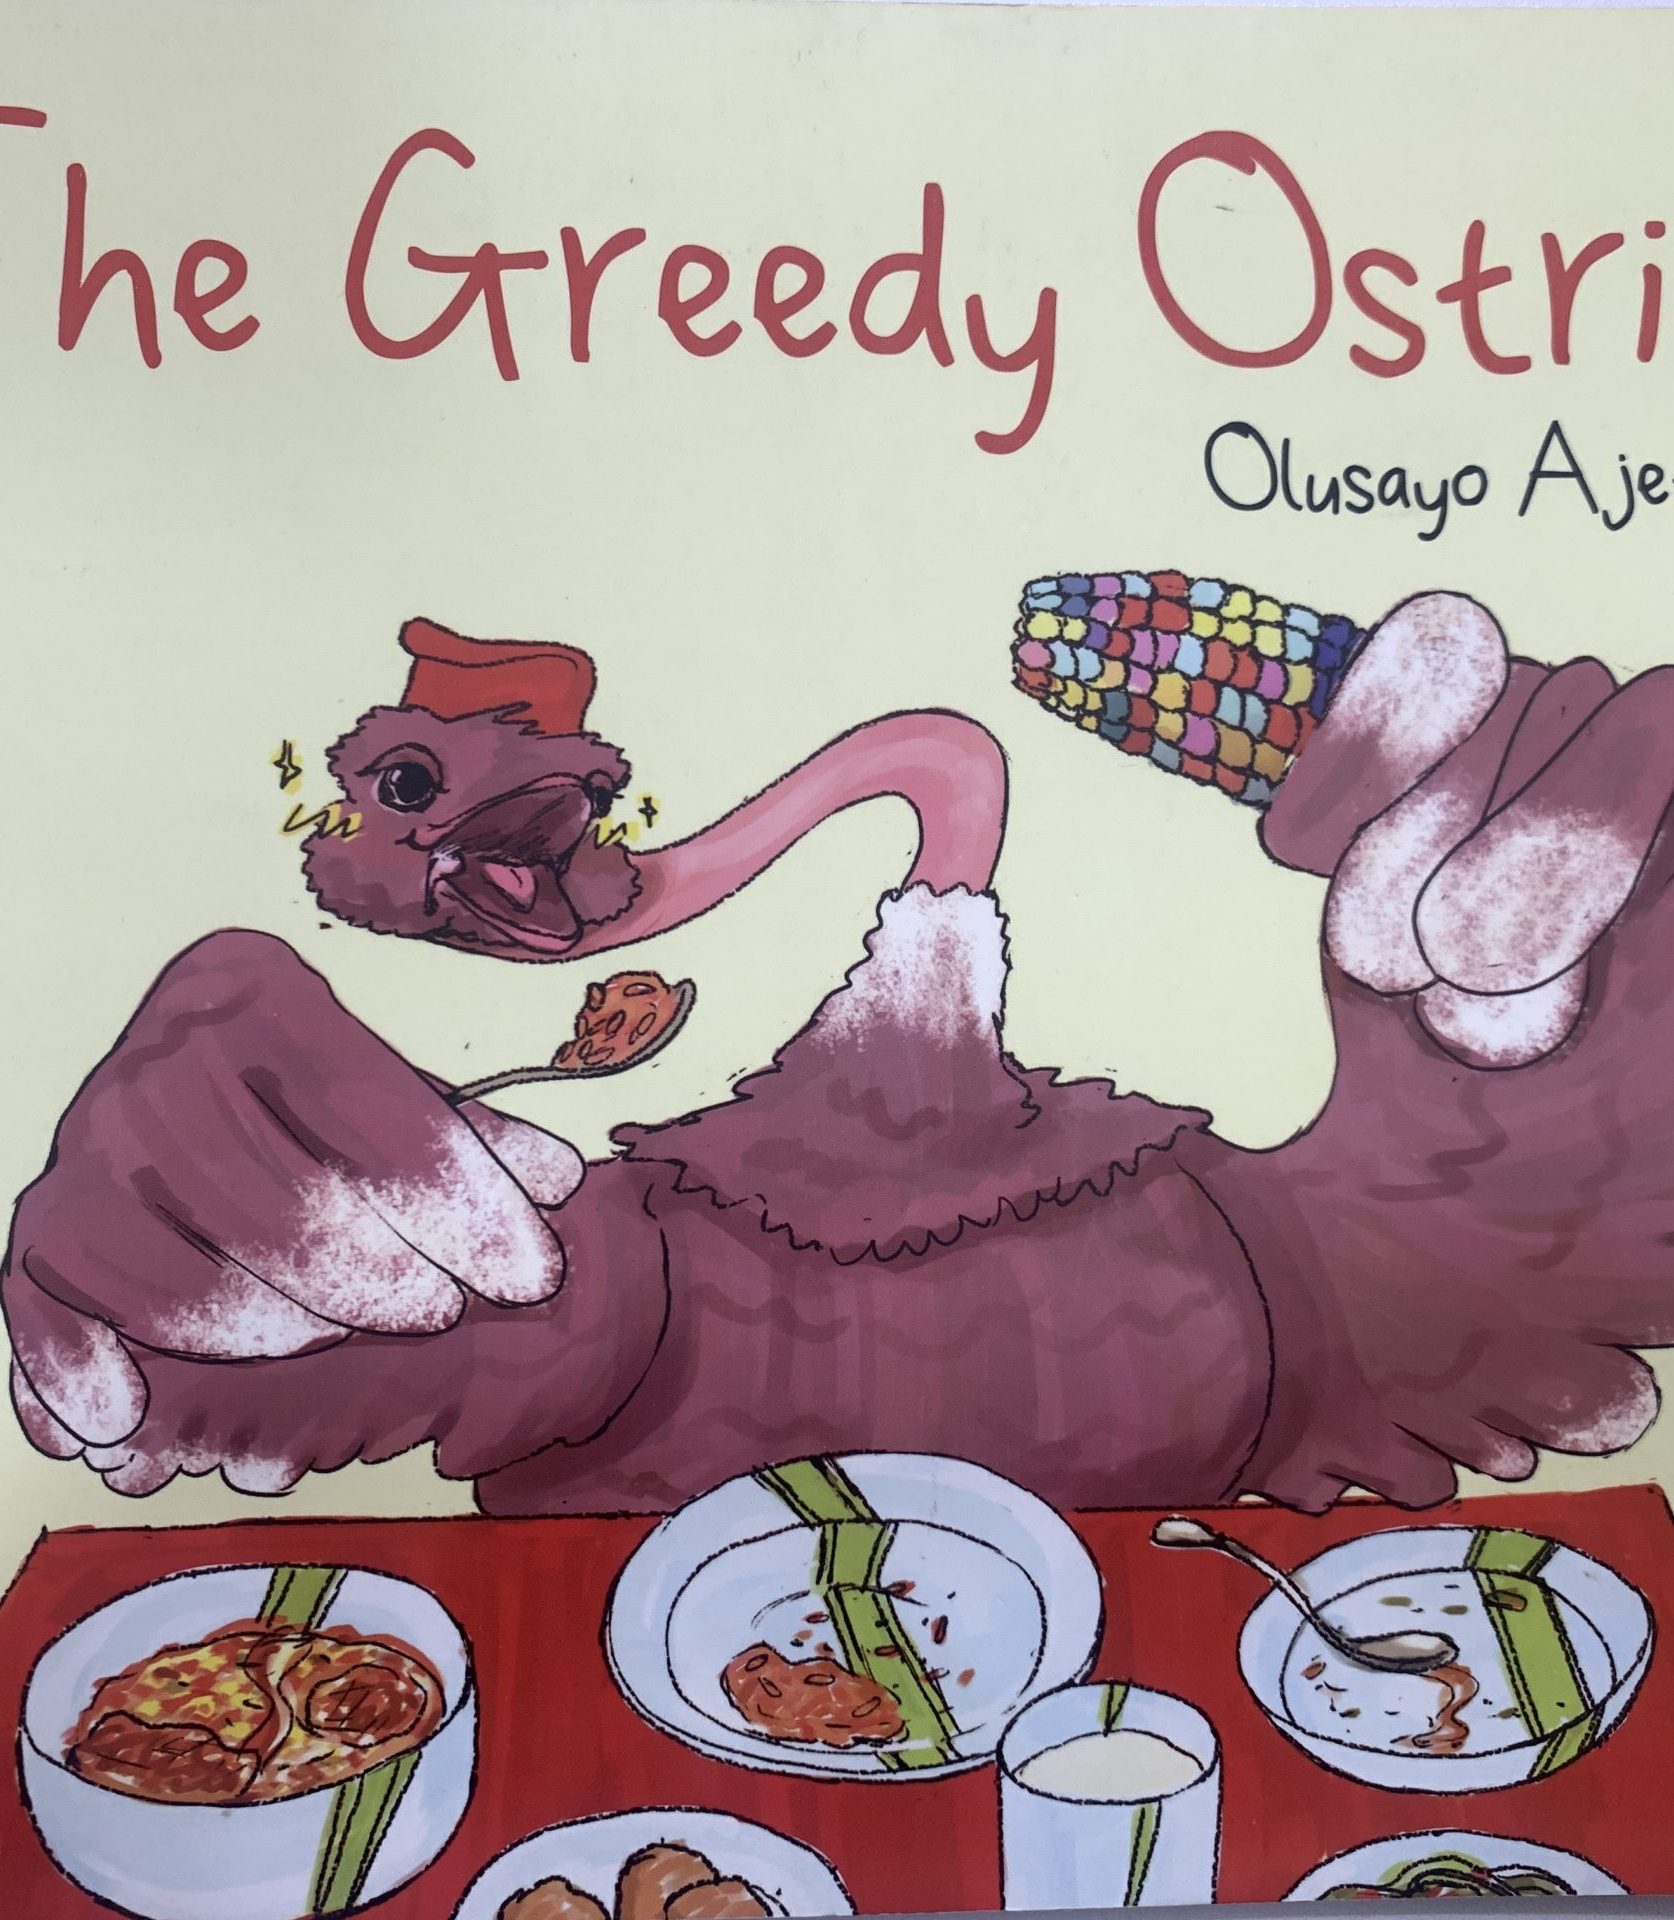 THE GREEDY OSTRICH